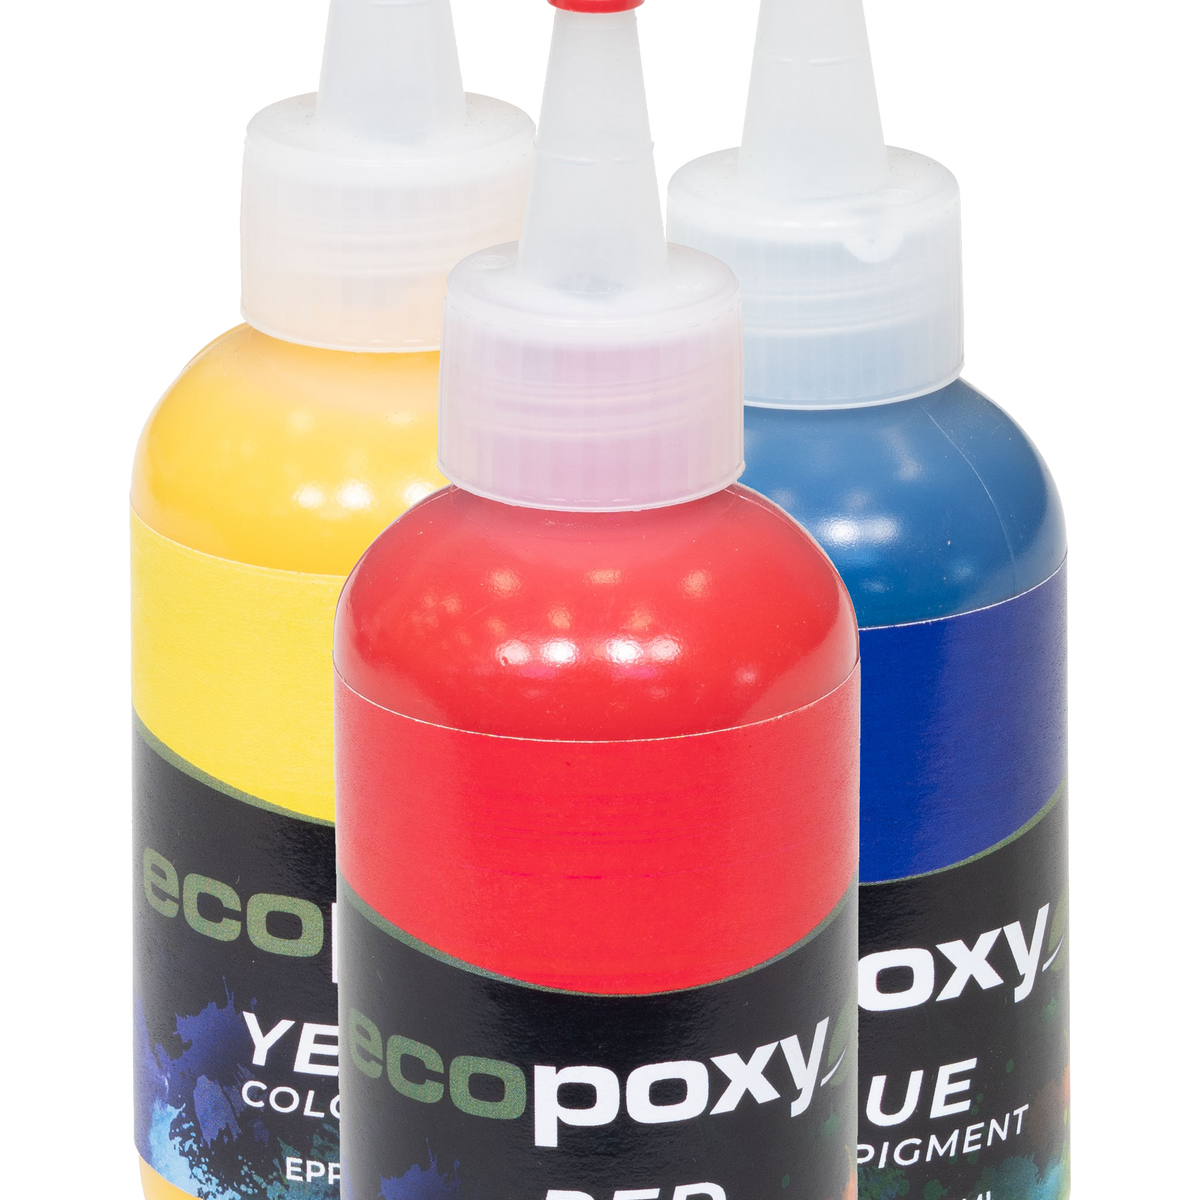 Makaron-pigmentos de resina epoxi de Color sólido, líquido